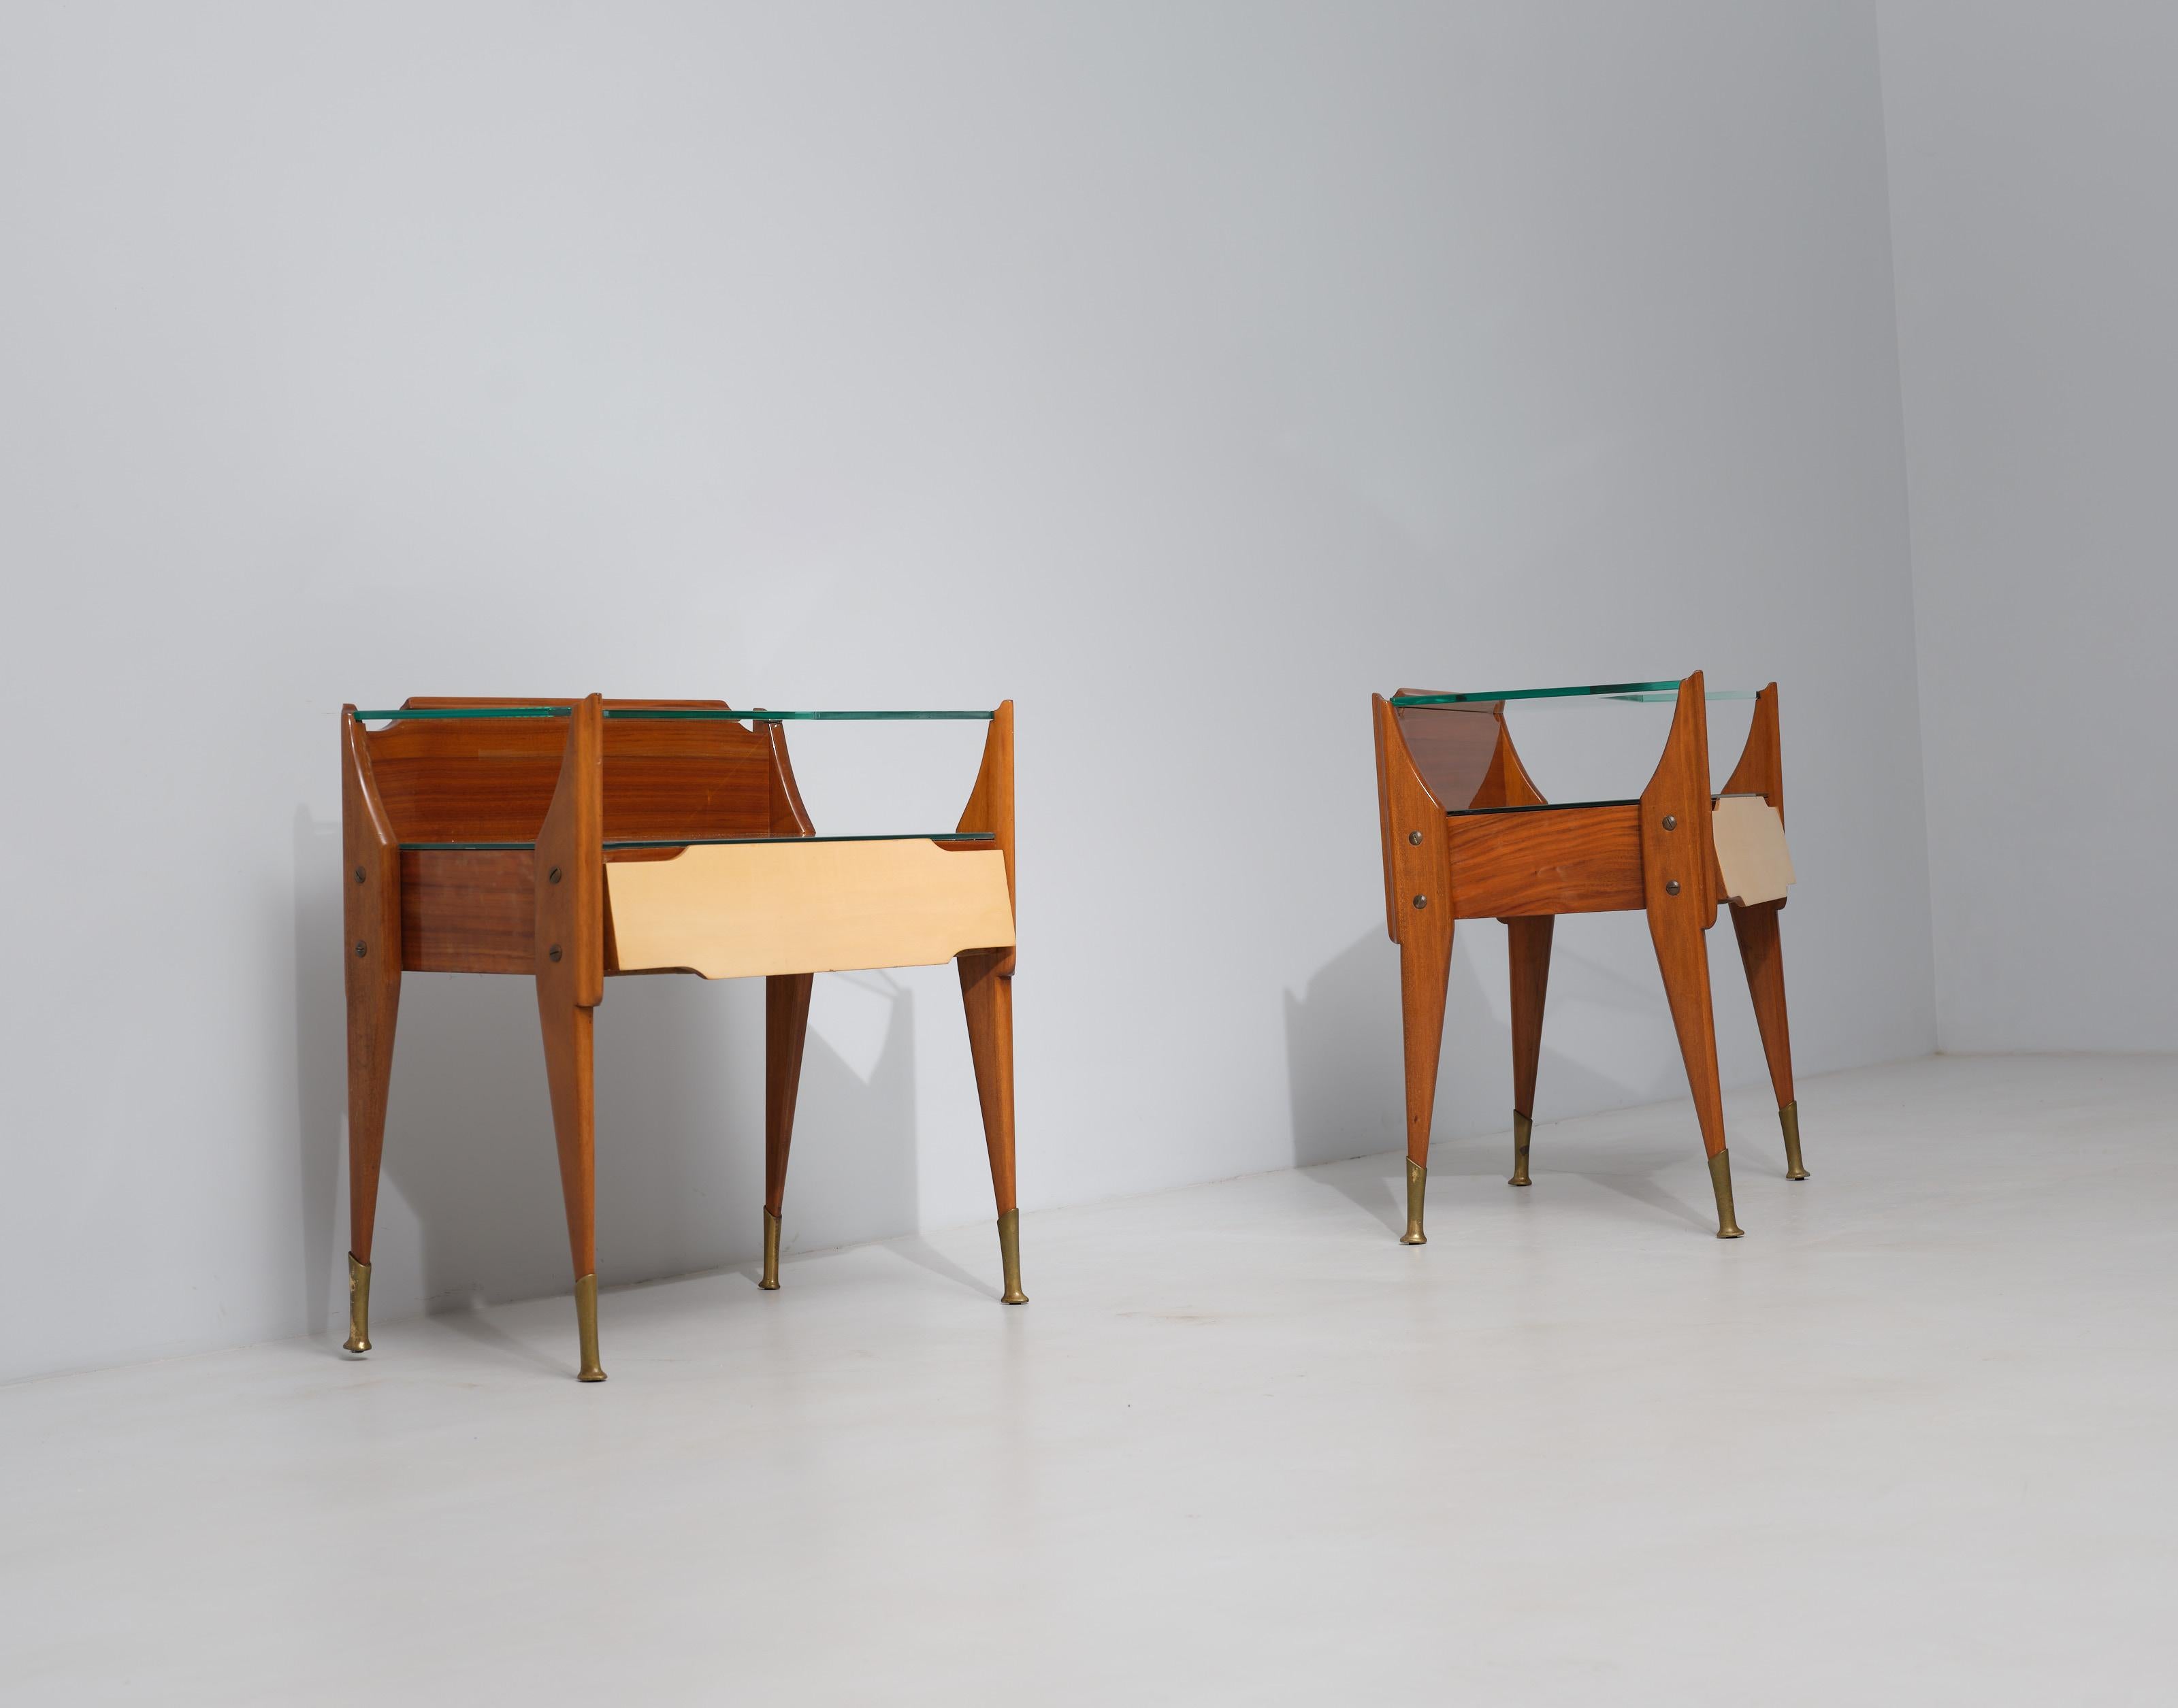 Exquisite Italian Craftsmanship: Vintage Teak Wood Bedside Tables For Sale 1